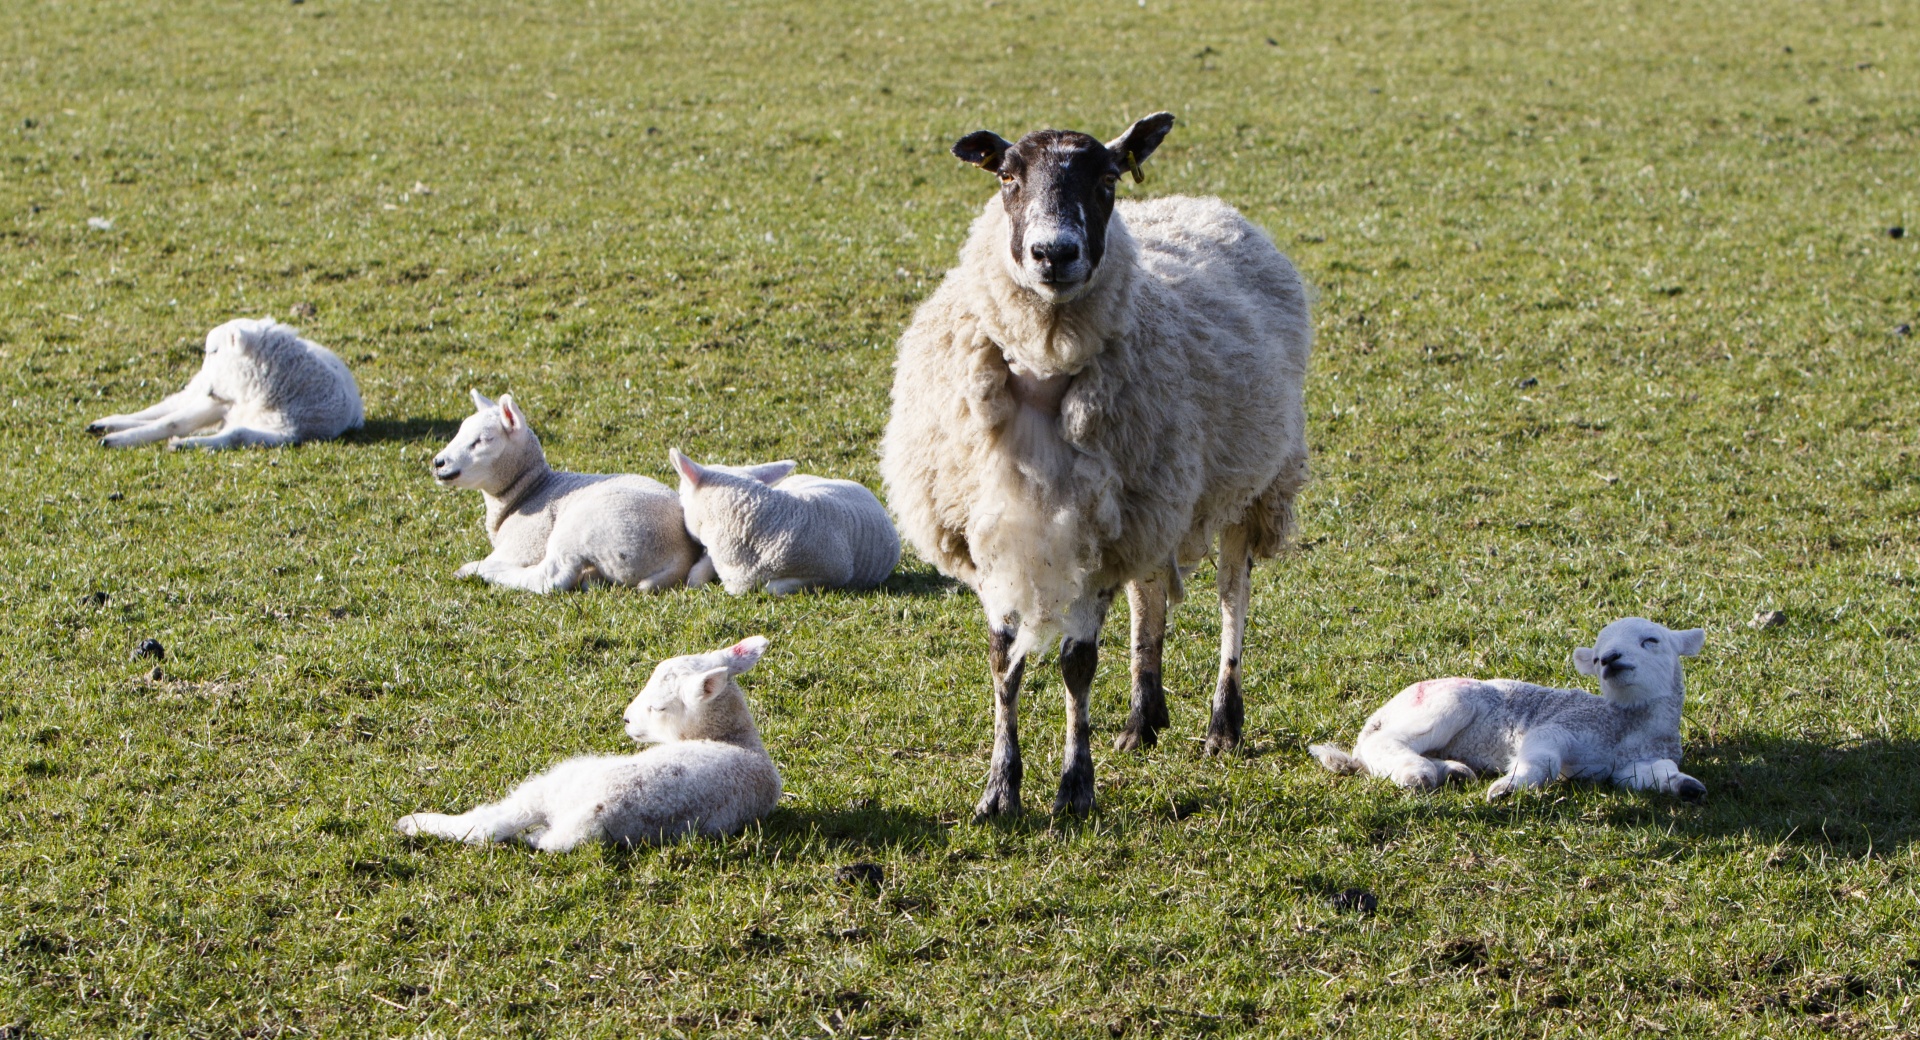 Lambs banhos de sol